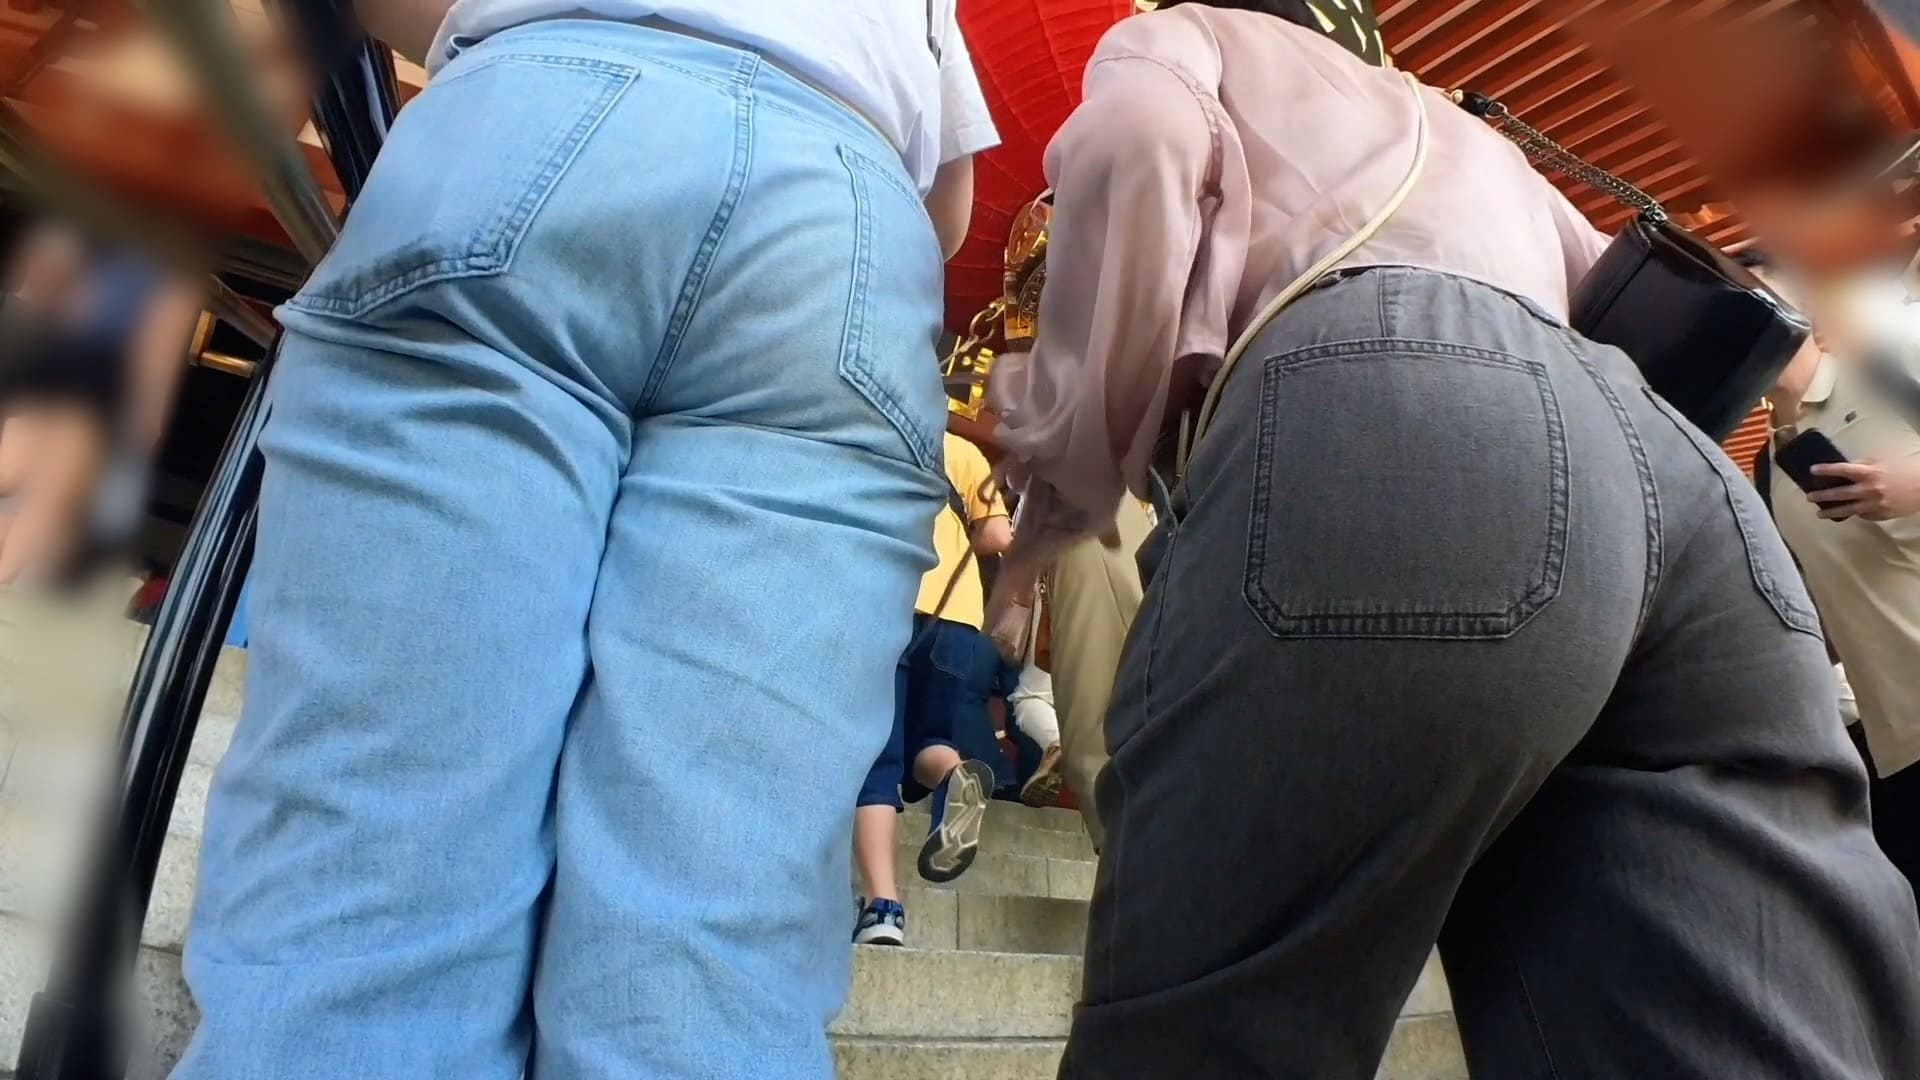 【巨尻ジーンズ】ムッチリ体系のアジア系巨尻娘ちゃんのジーンズ着衣尻を粘着撮影。